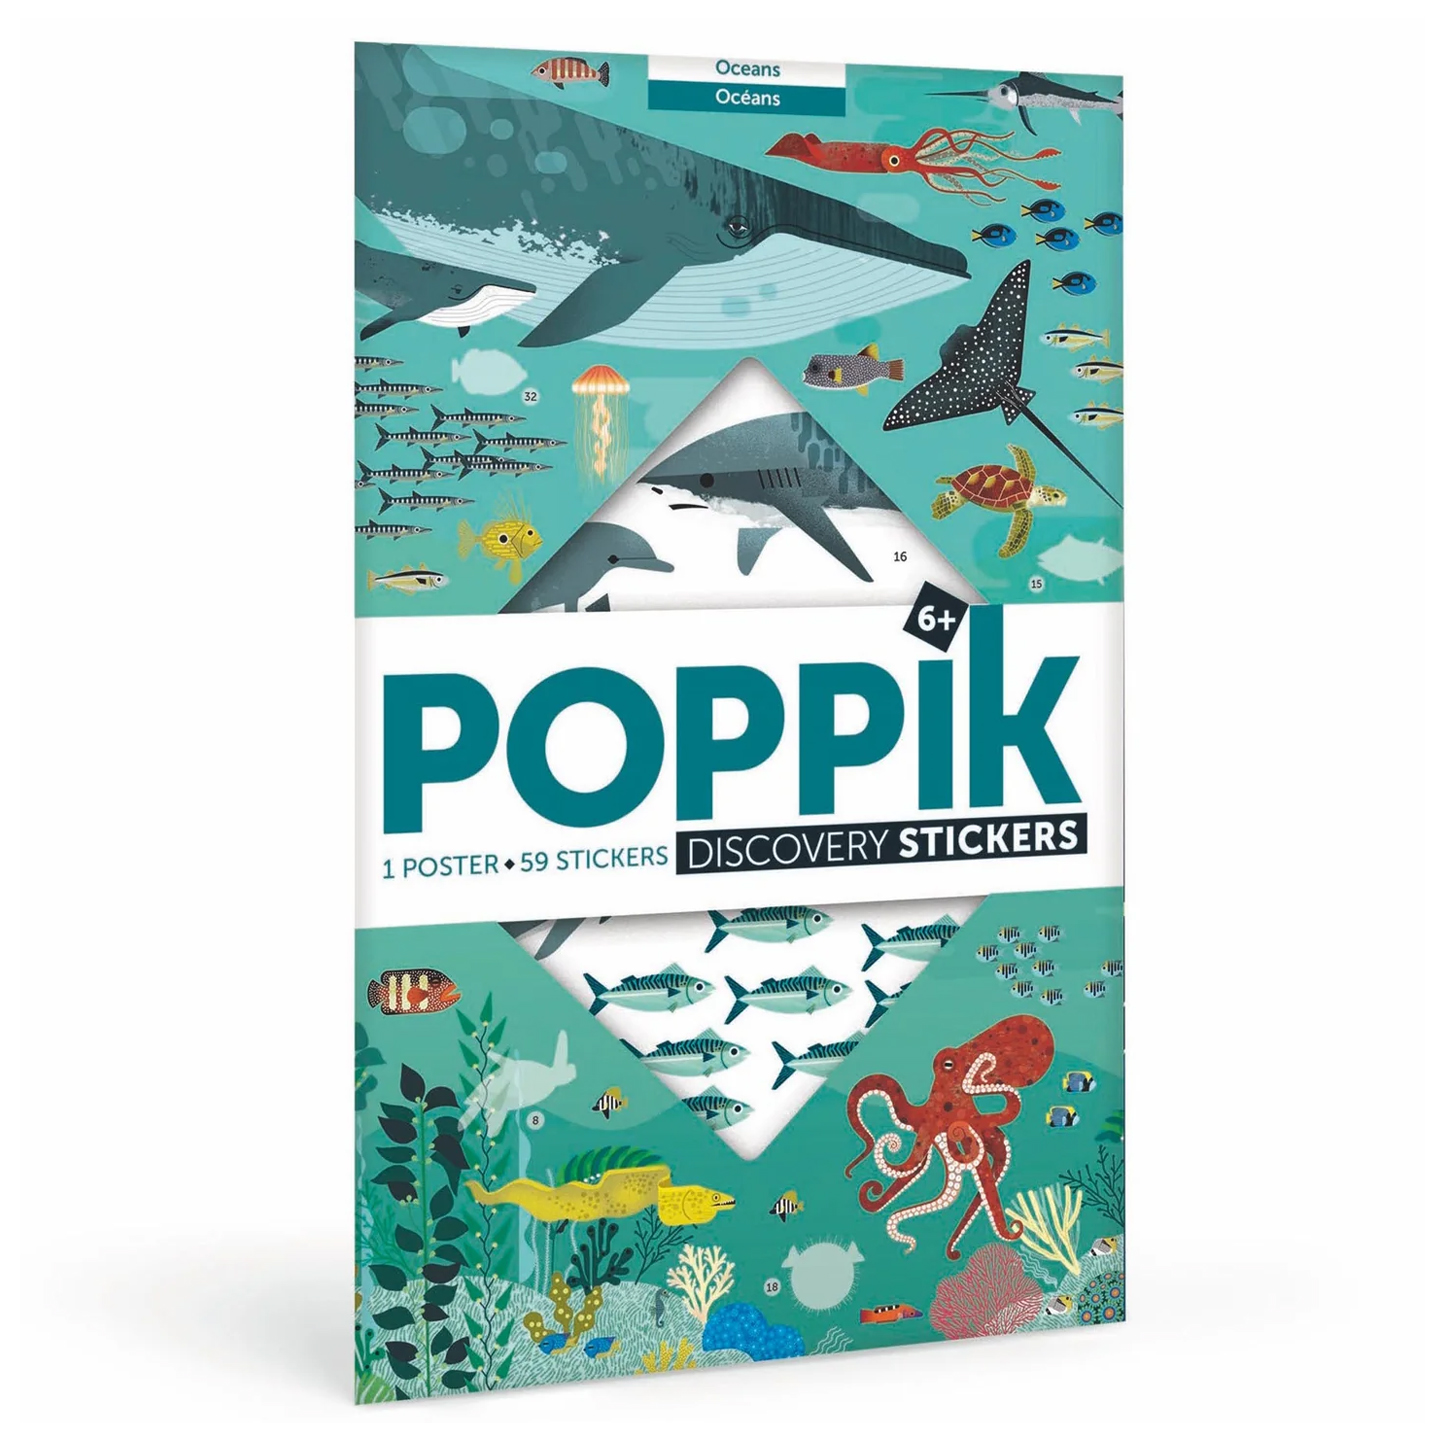 POPPIK Poppik Discovery Sticker Poster - Oceans